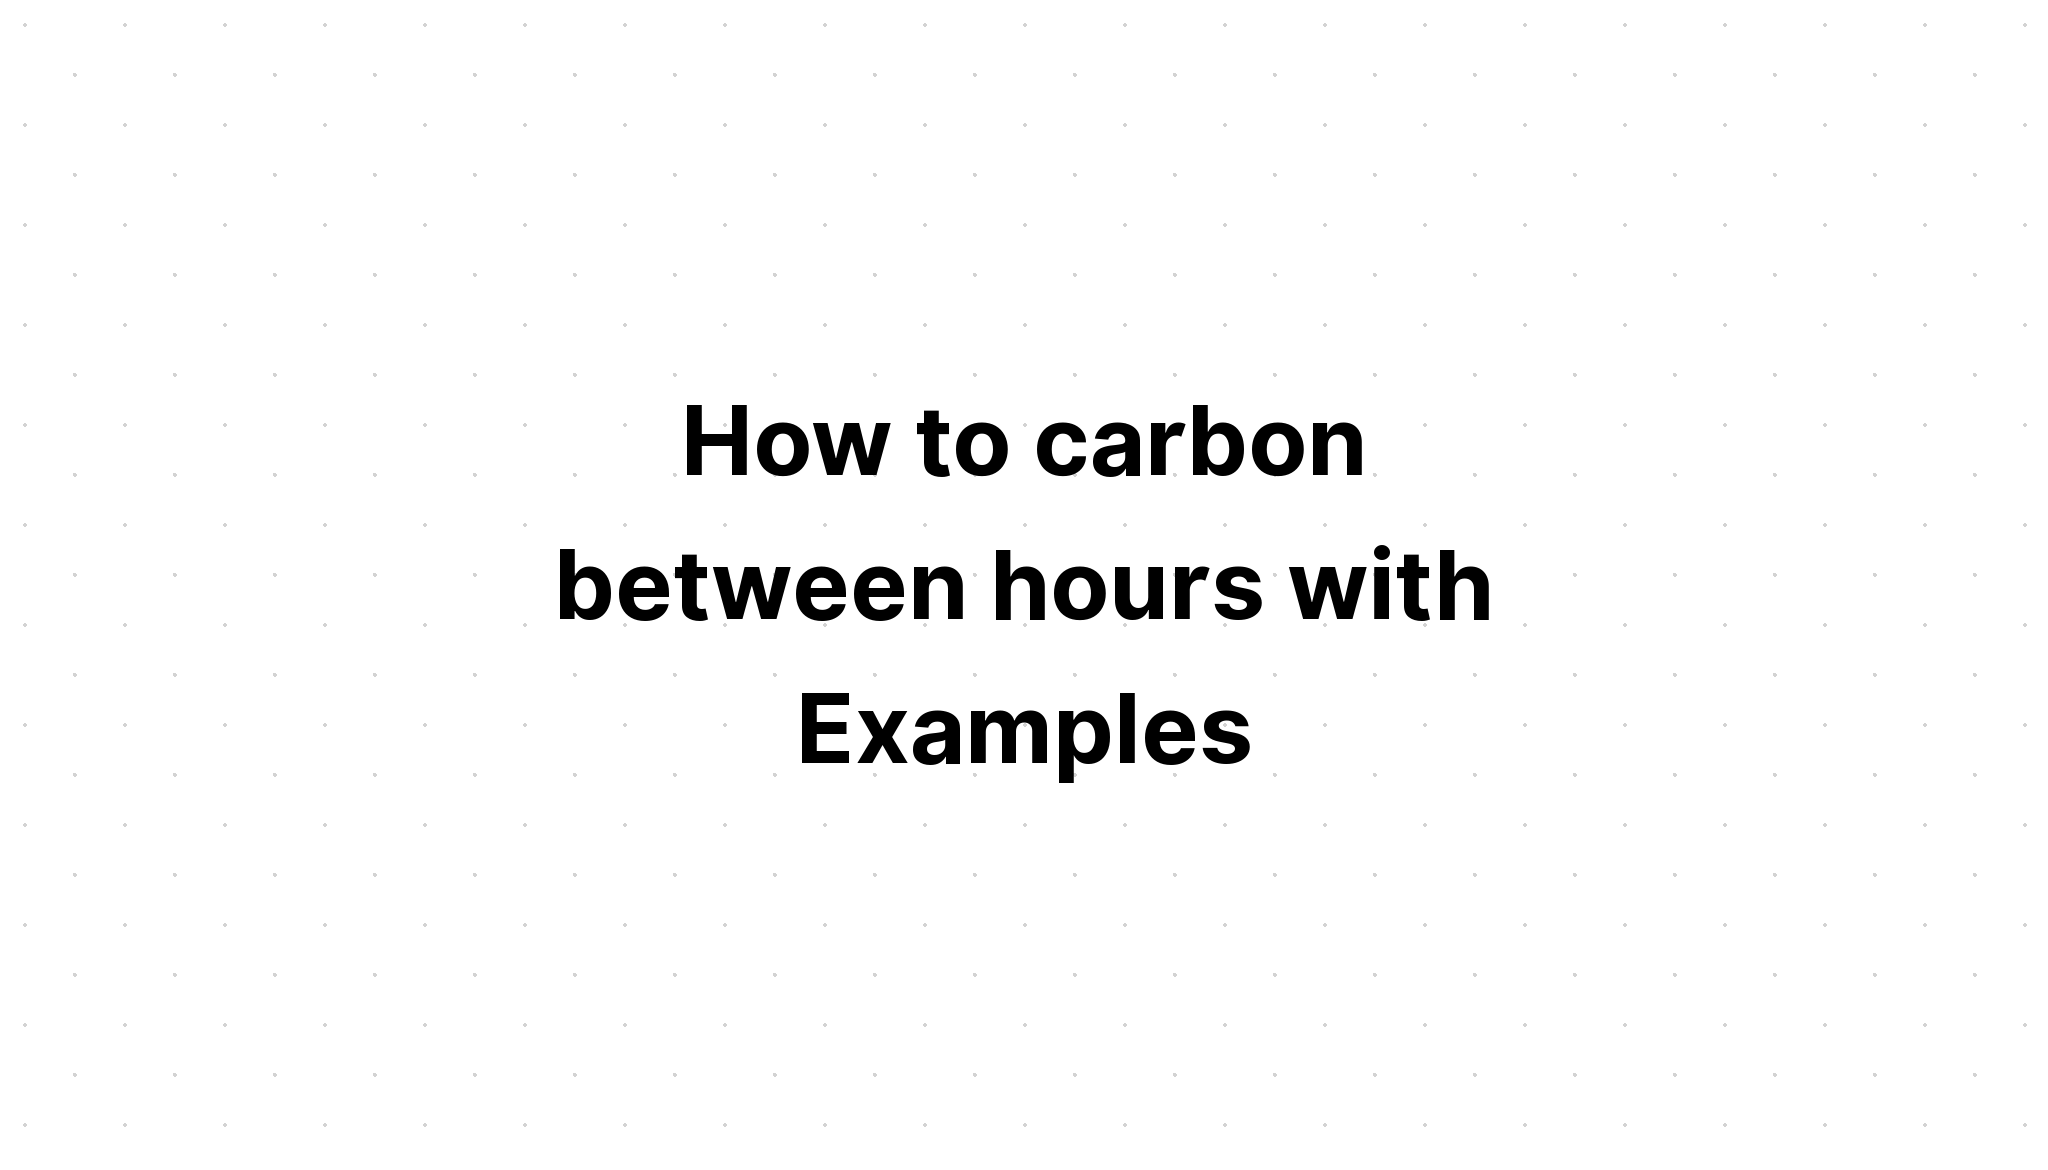 Cách carbon giữa các giờ với Ví dụ